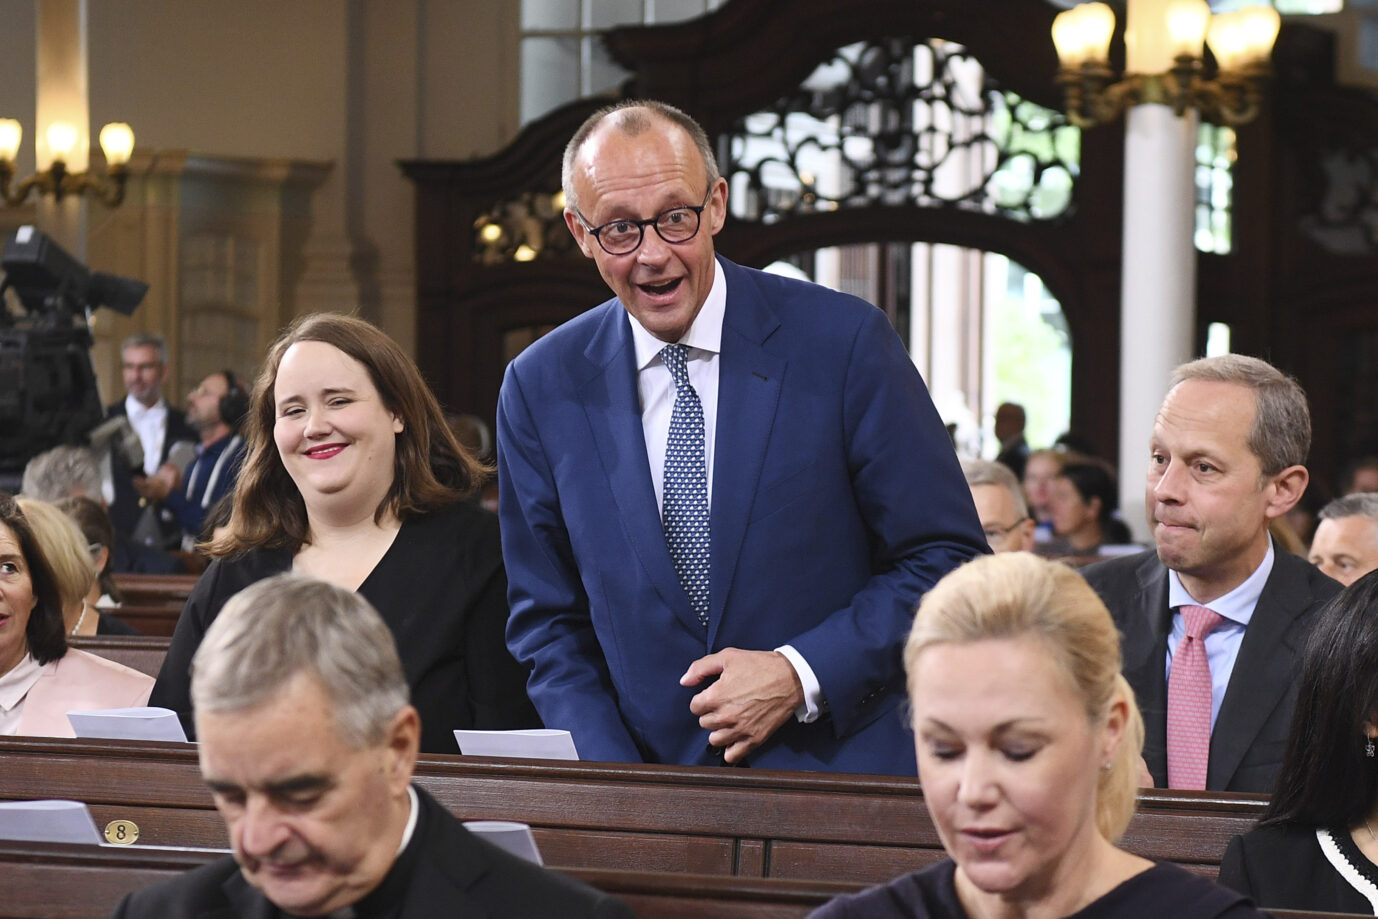 Auf dem Foto befinden sich die Grünen-Bundeschefin Ricarda Lang und deren CDU-Pendant, Friedrich Merz. Derzeit wird viel über ein schwarz-grünes Bündnis diskutiert. Er ist Vorsitzender der Union. (Themenbild/Symbolbild)